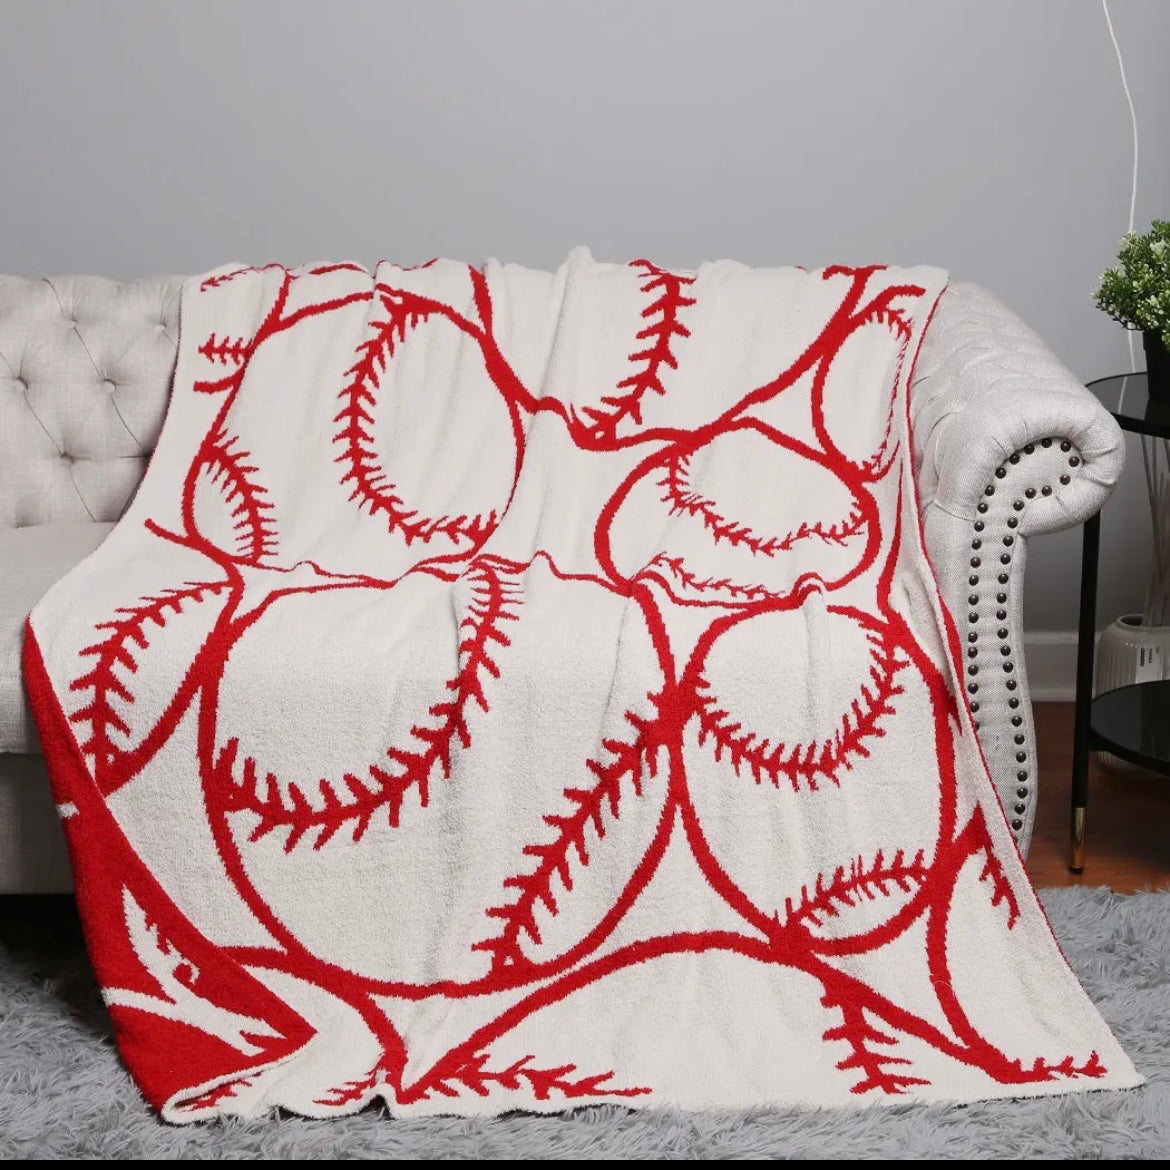 The Softest Ever Baseball Blanket